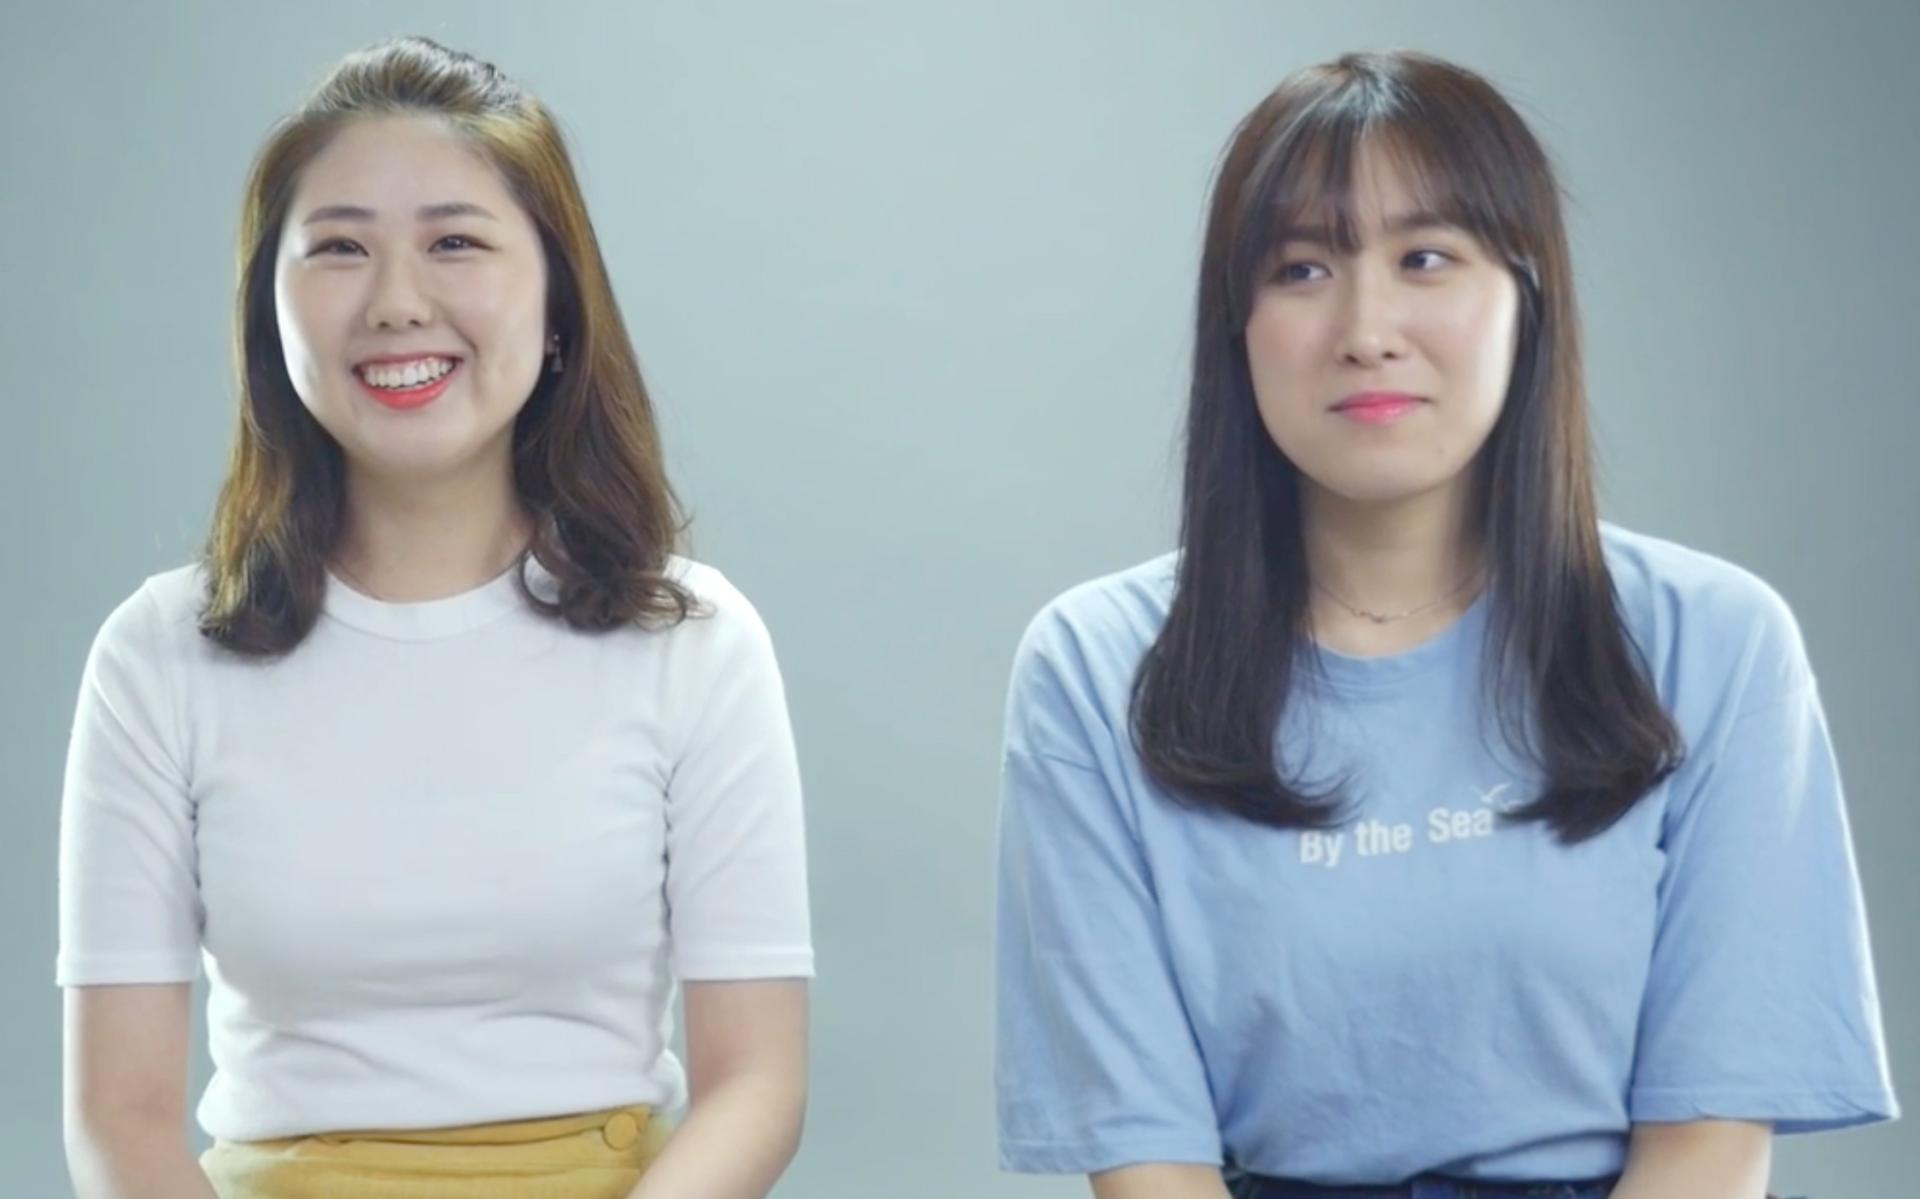 绝对真心话采访短片《韩国女生大胆应对固有偏见》